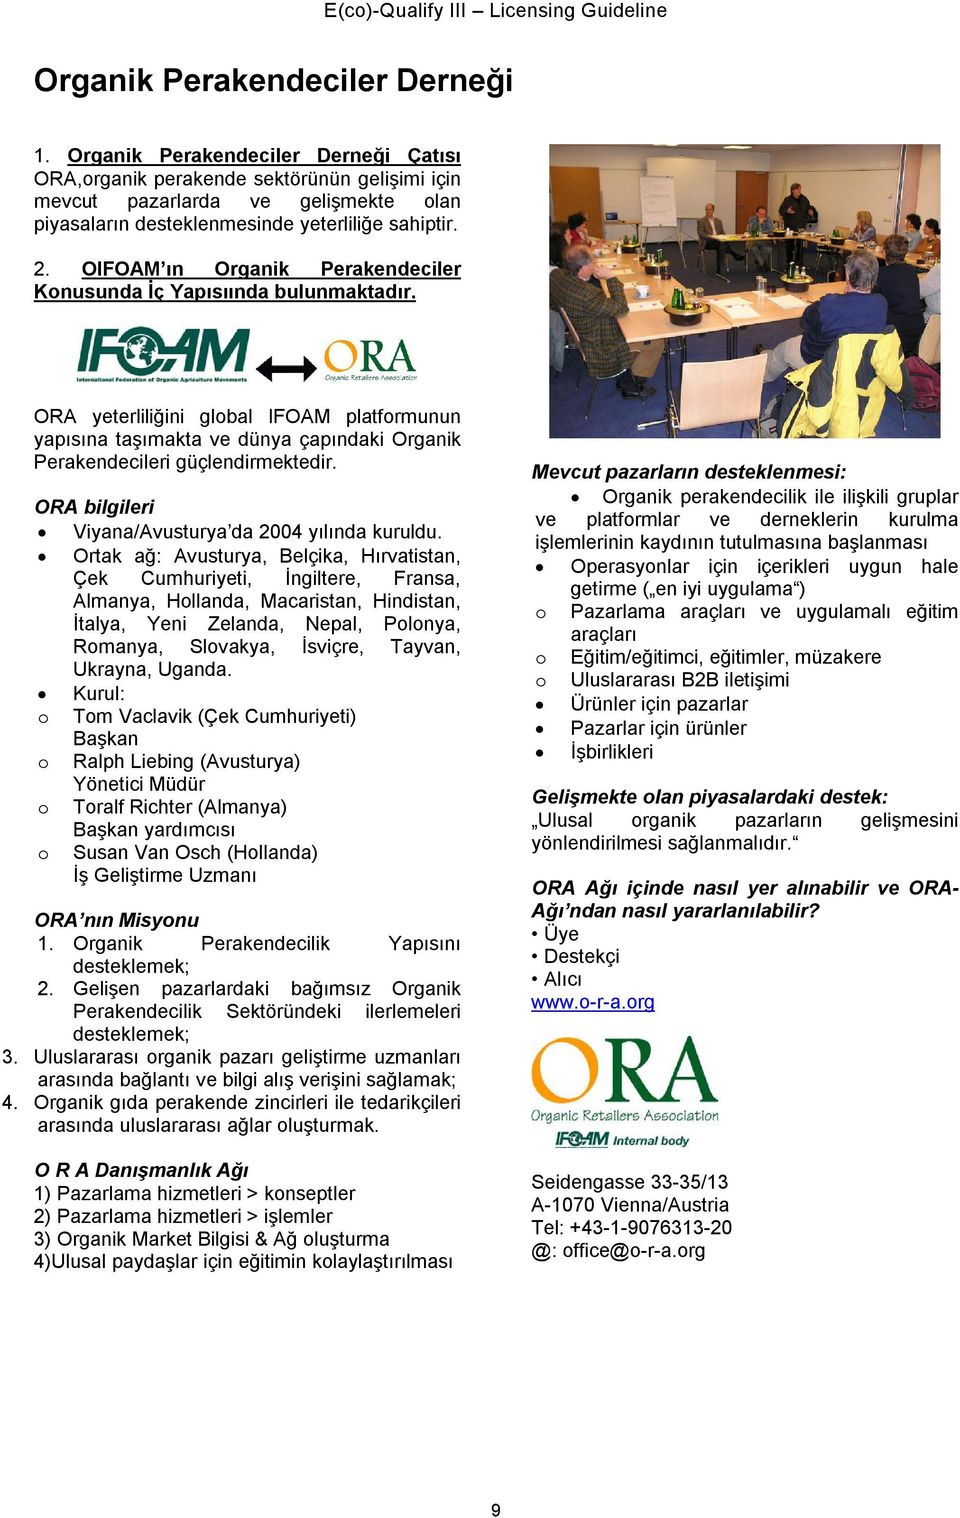 OIFOAM ın Organik Perakendeciler Konusunda İç Yapısıında bulunmaktadır. ORA yeterliliğini global IFOAM platformunun yapısına taşımakta ve dünya çapındaki Organik Perakendecileri güçlendirmektedir.